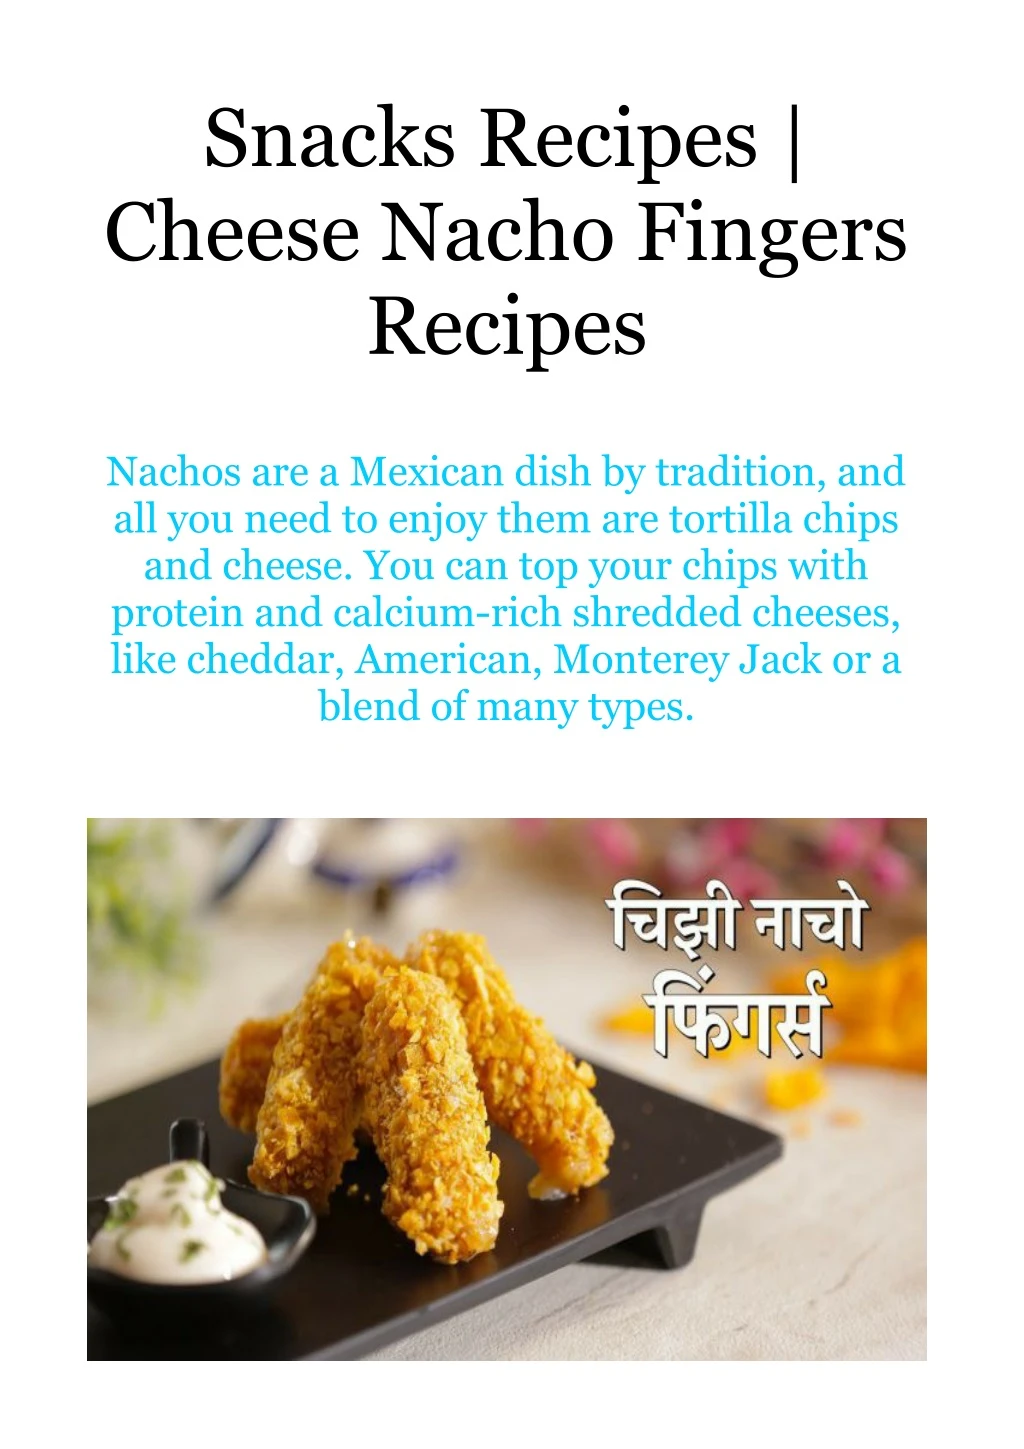 snacks recipes cheese nacho fingers recipes